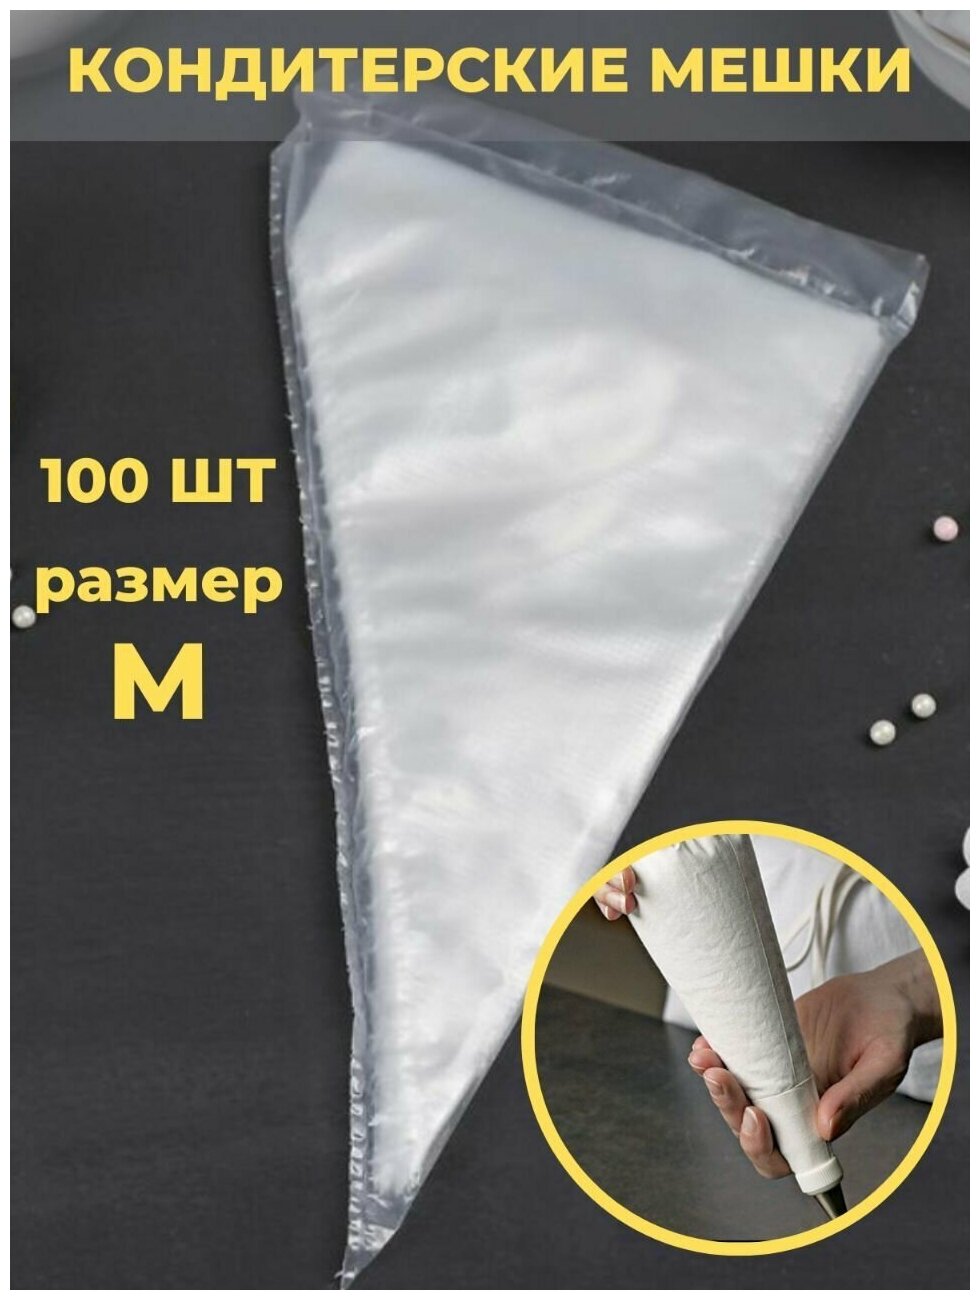 Кондитерский мешок одноразовый tortokoshka. Набор кондитерских мешков для декорирования 100шт